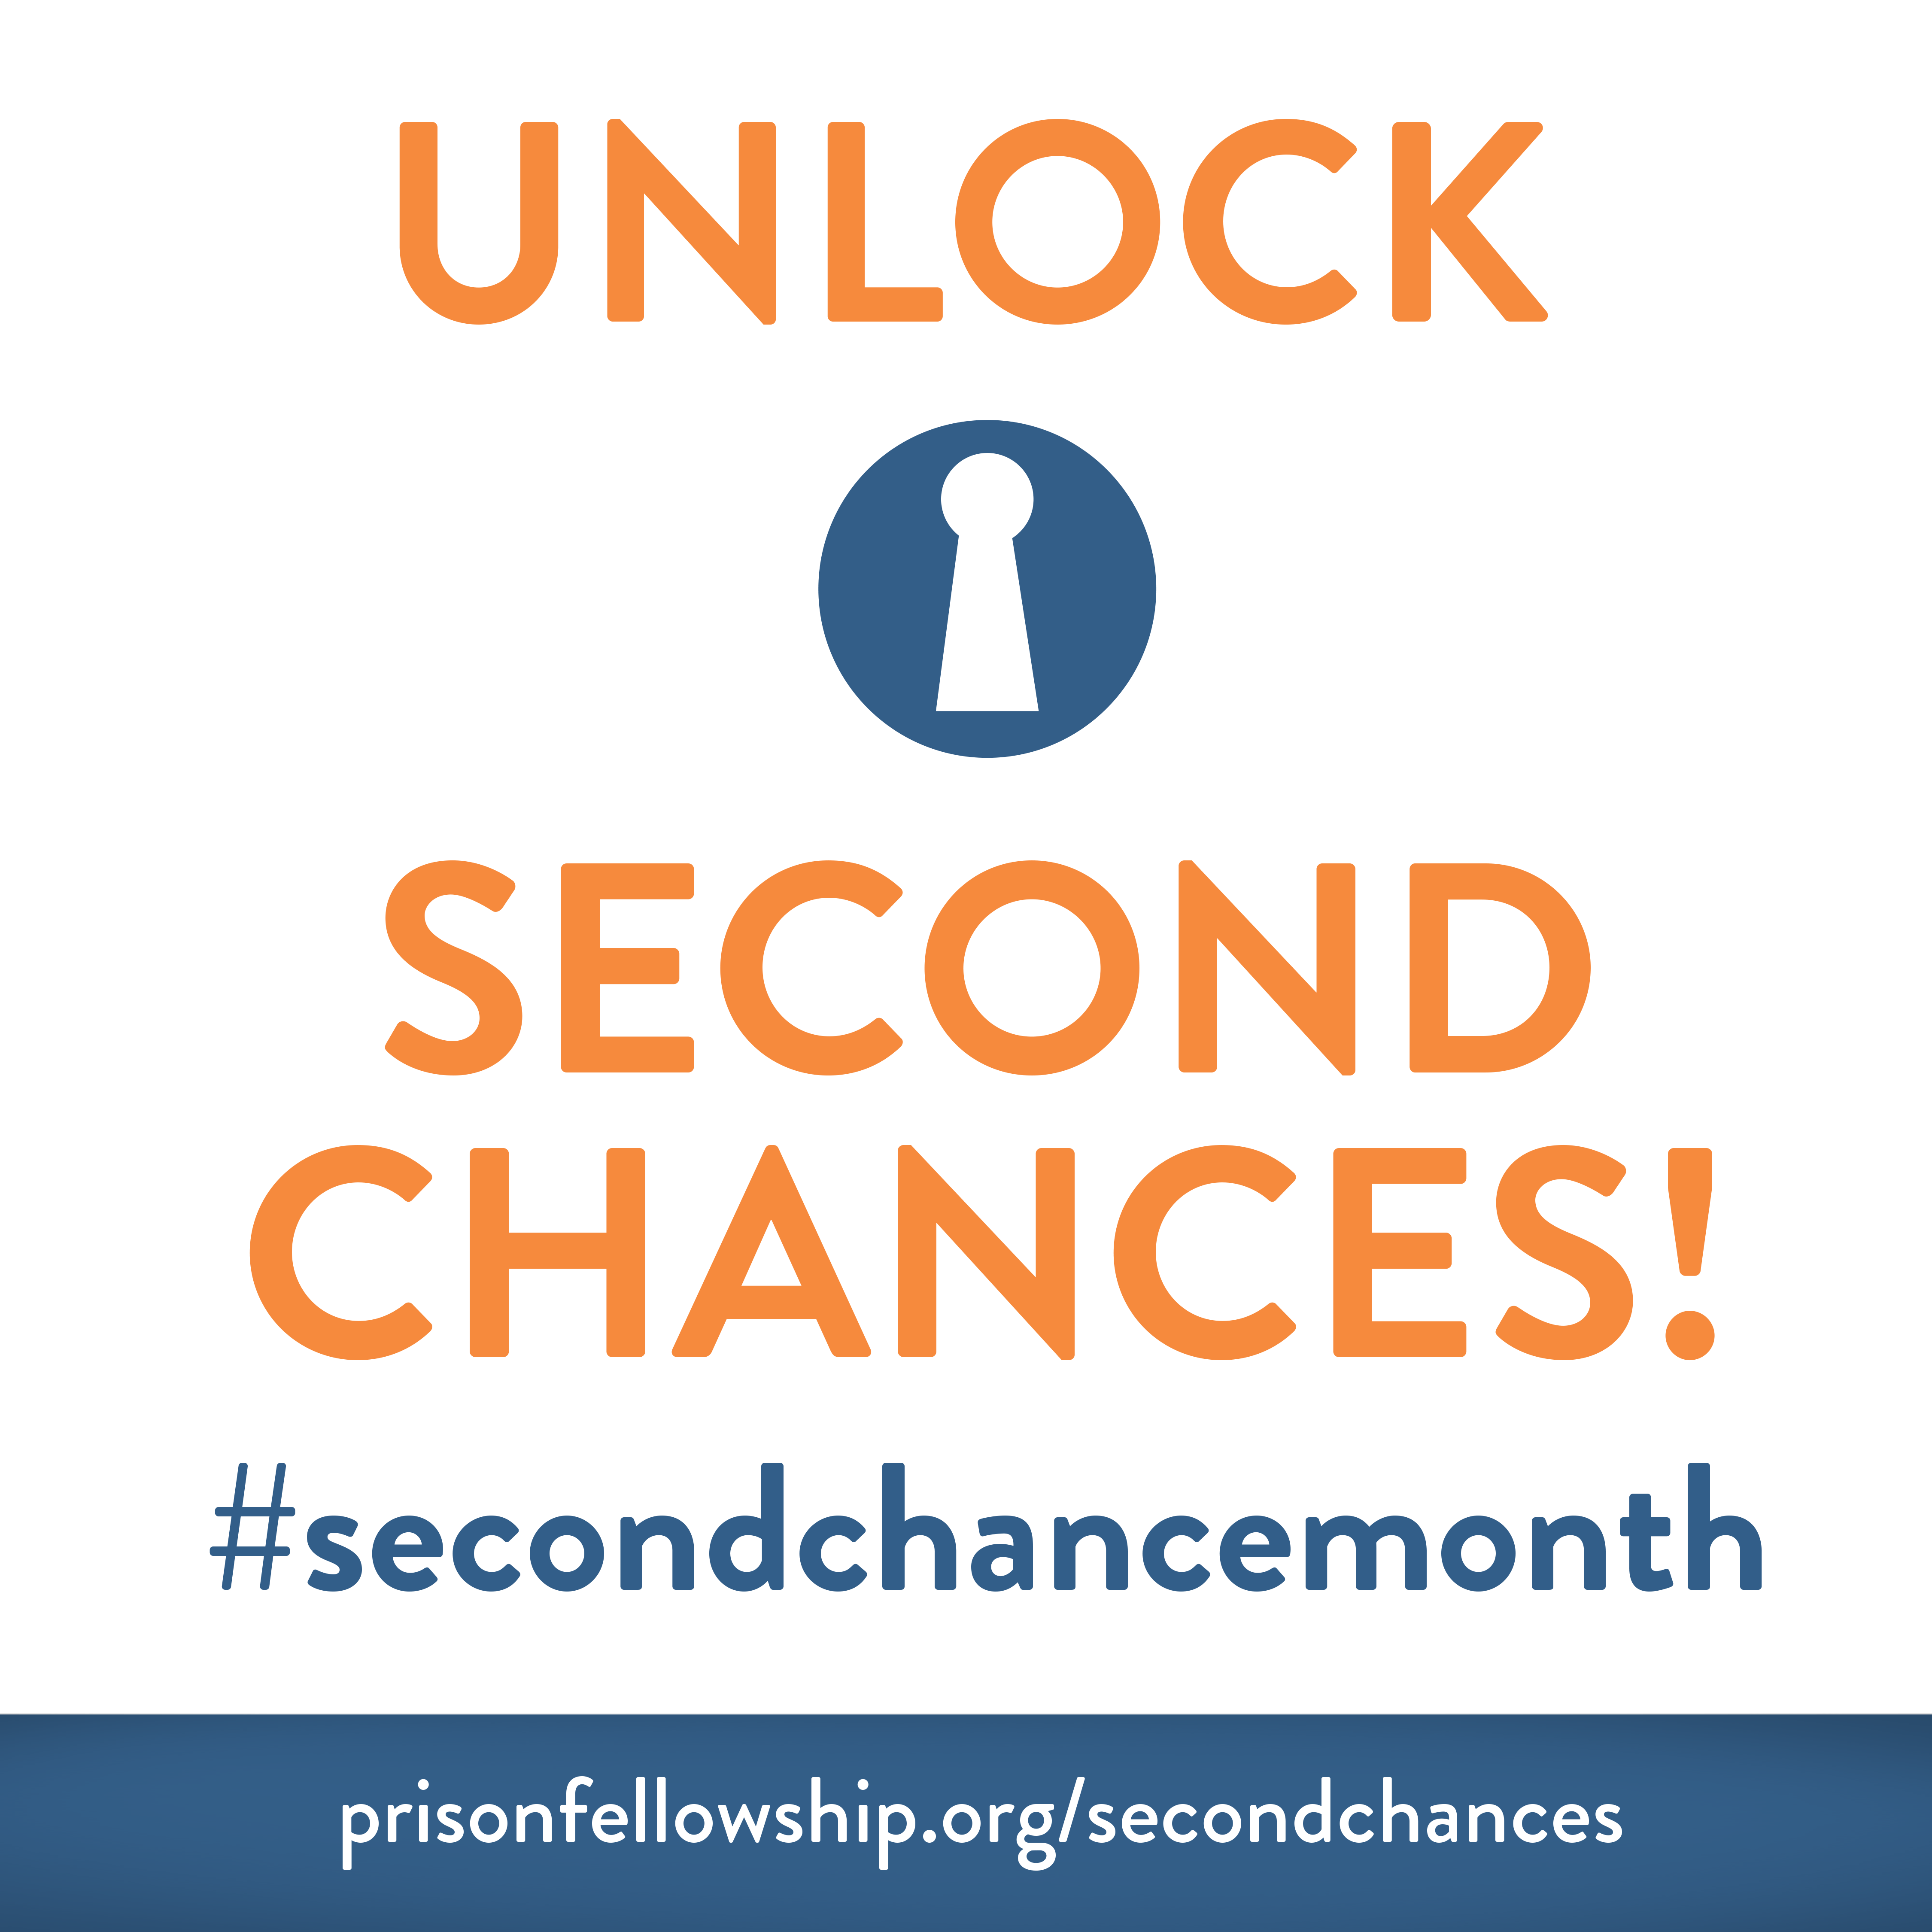 Second Chance Month Unlock Second Chances